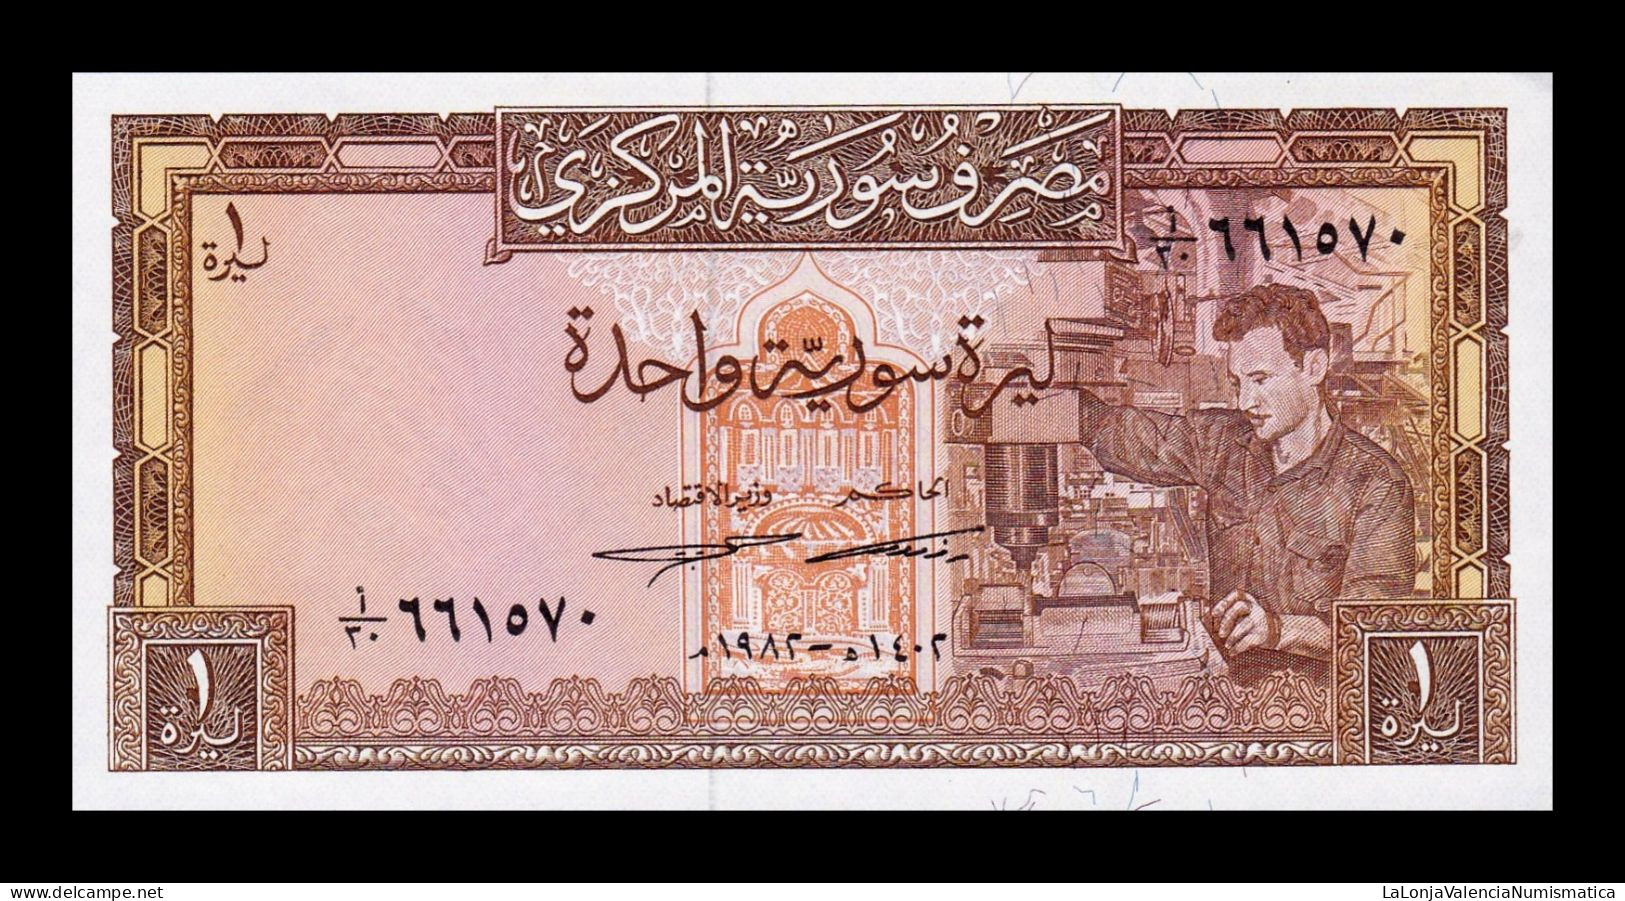 Siria Syria 1 Pound 1982 Pick 93e Sc Unc - Siria